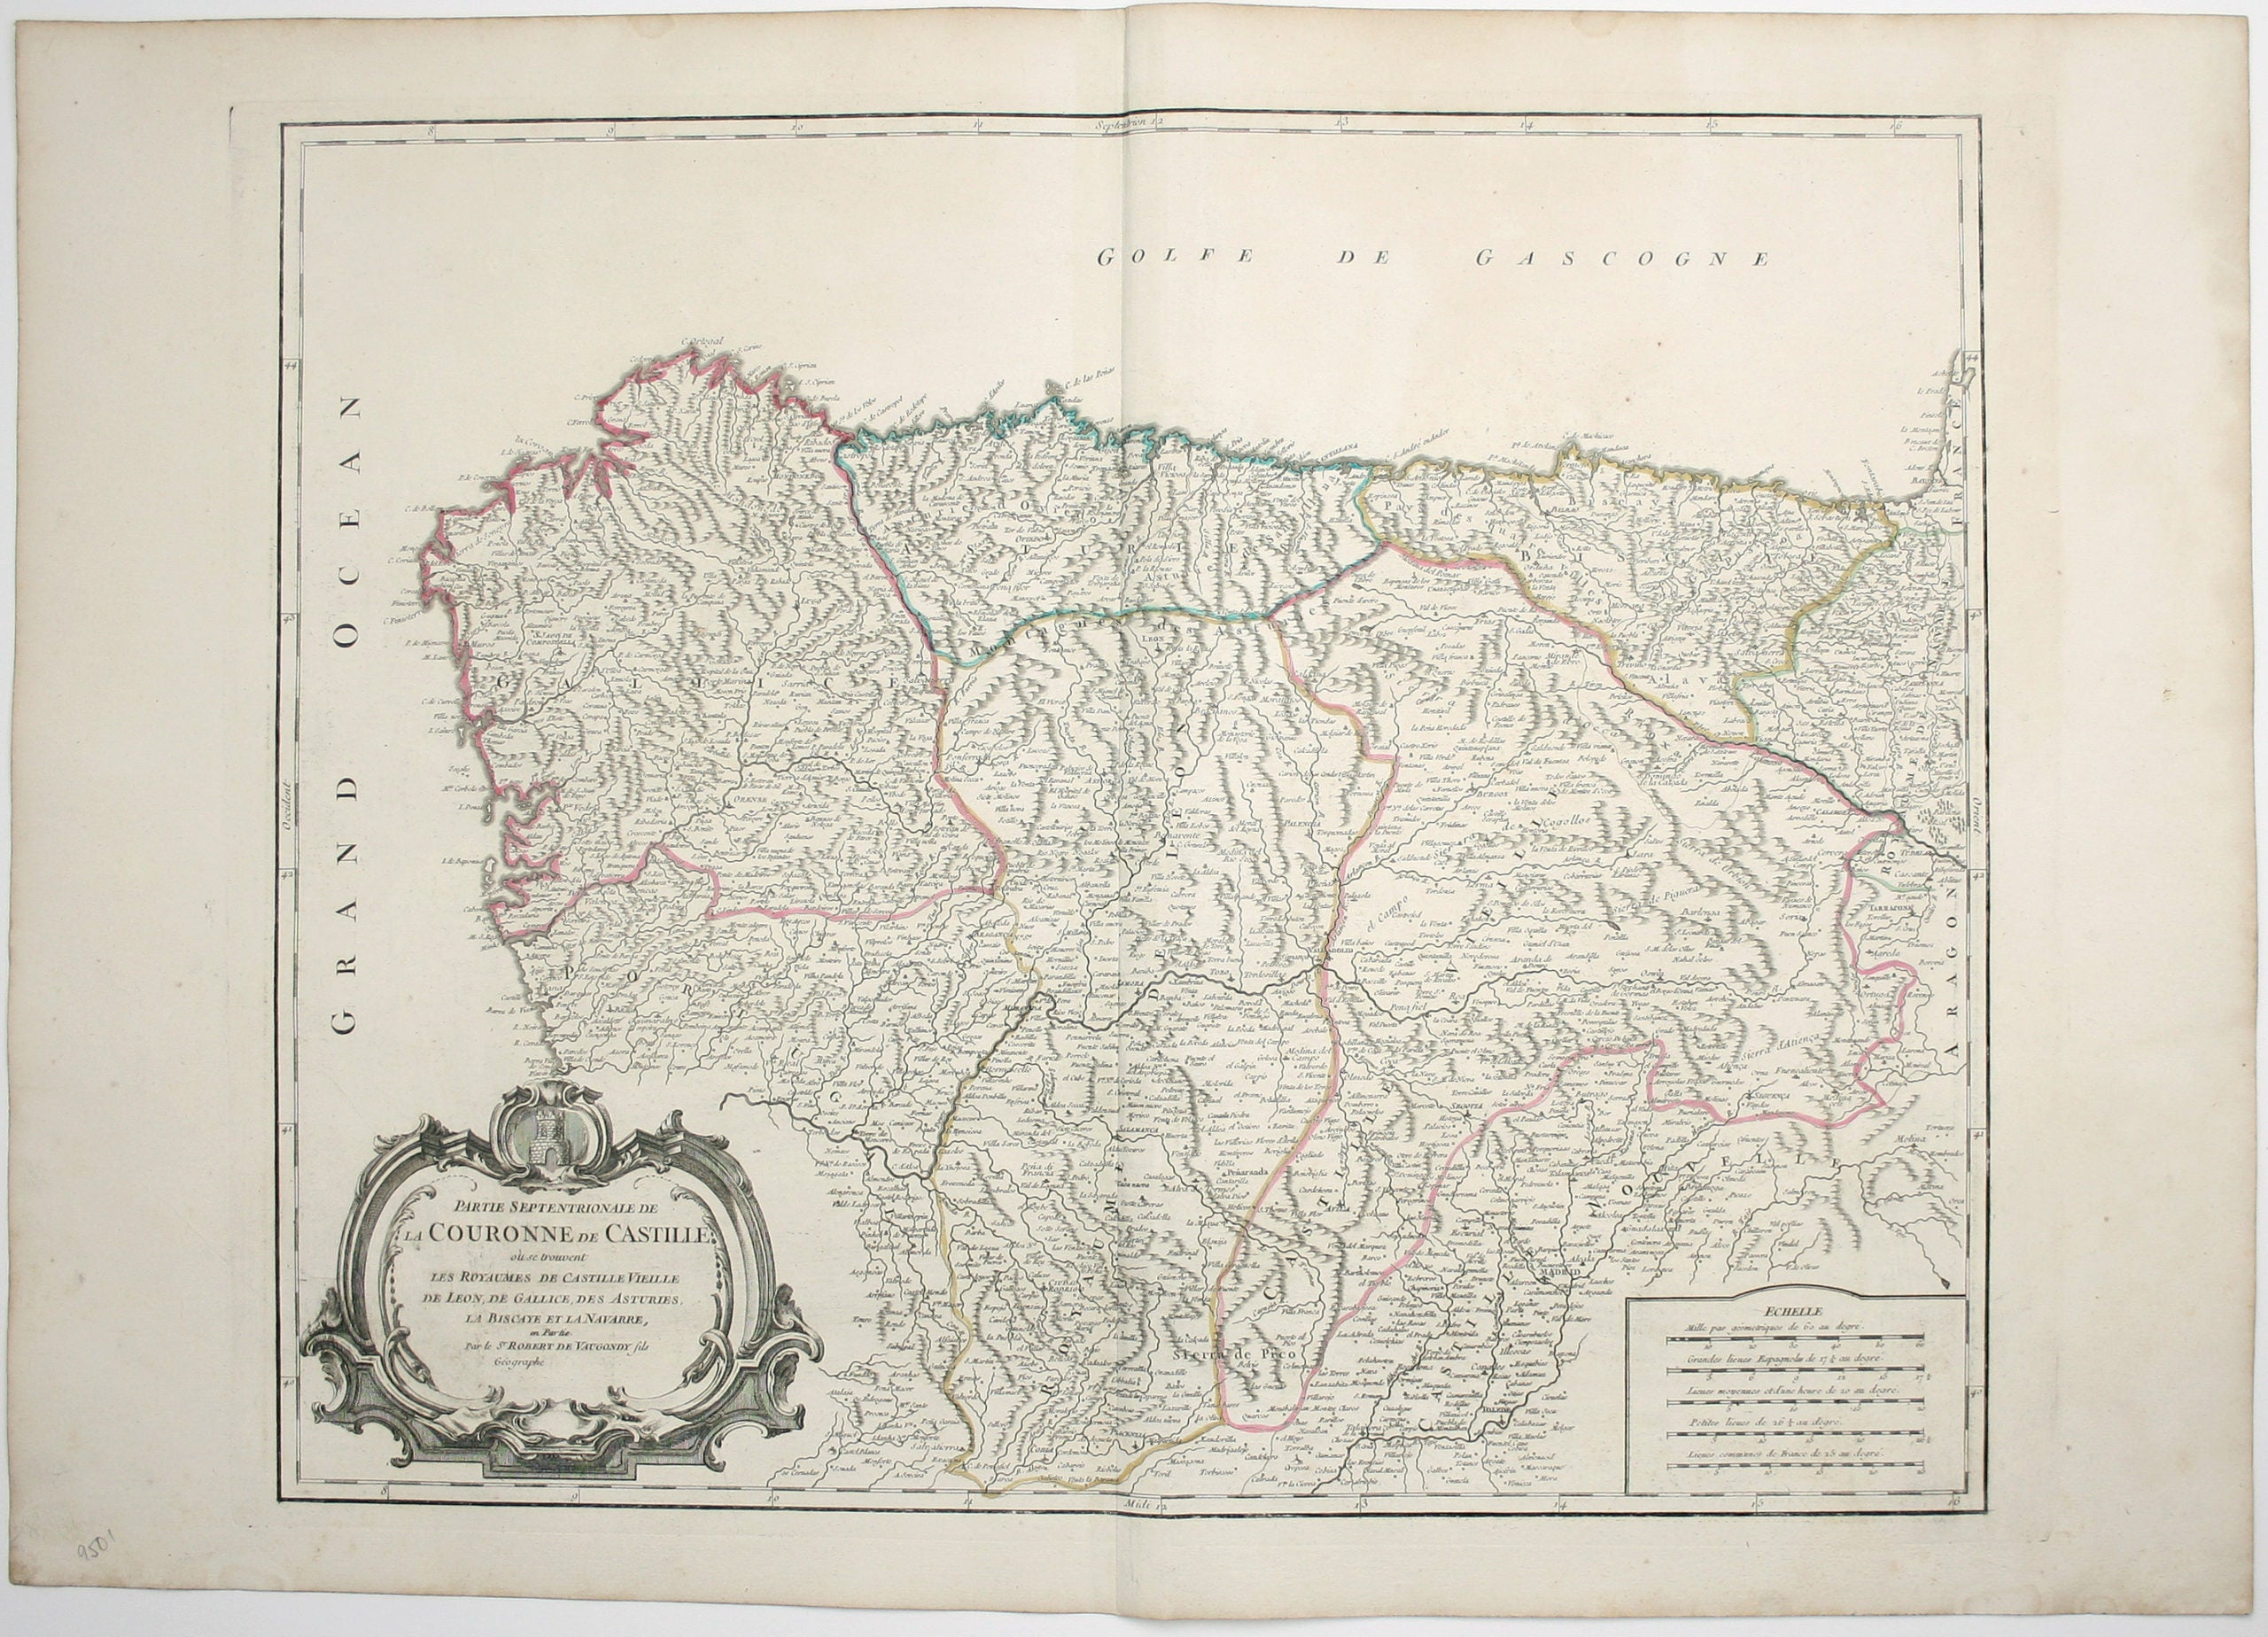 Robert de Vaugondy’s Map of Northern Castille